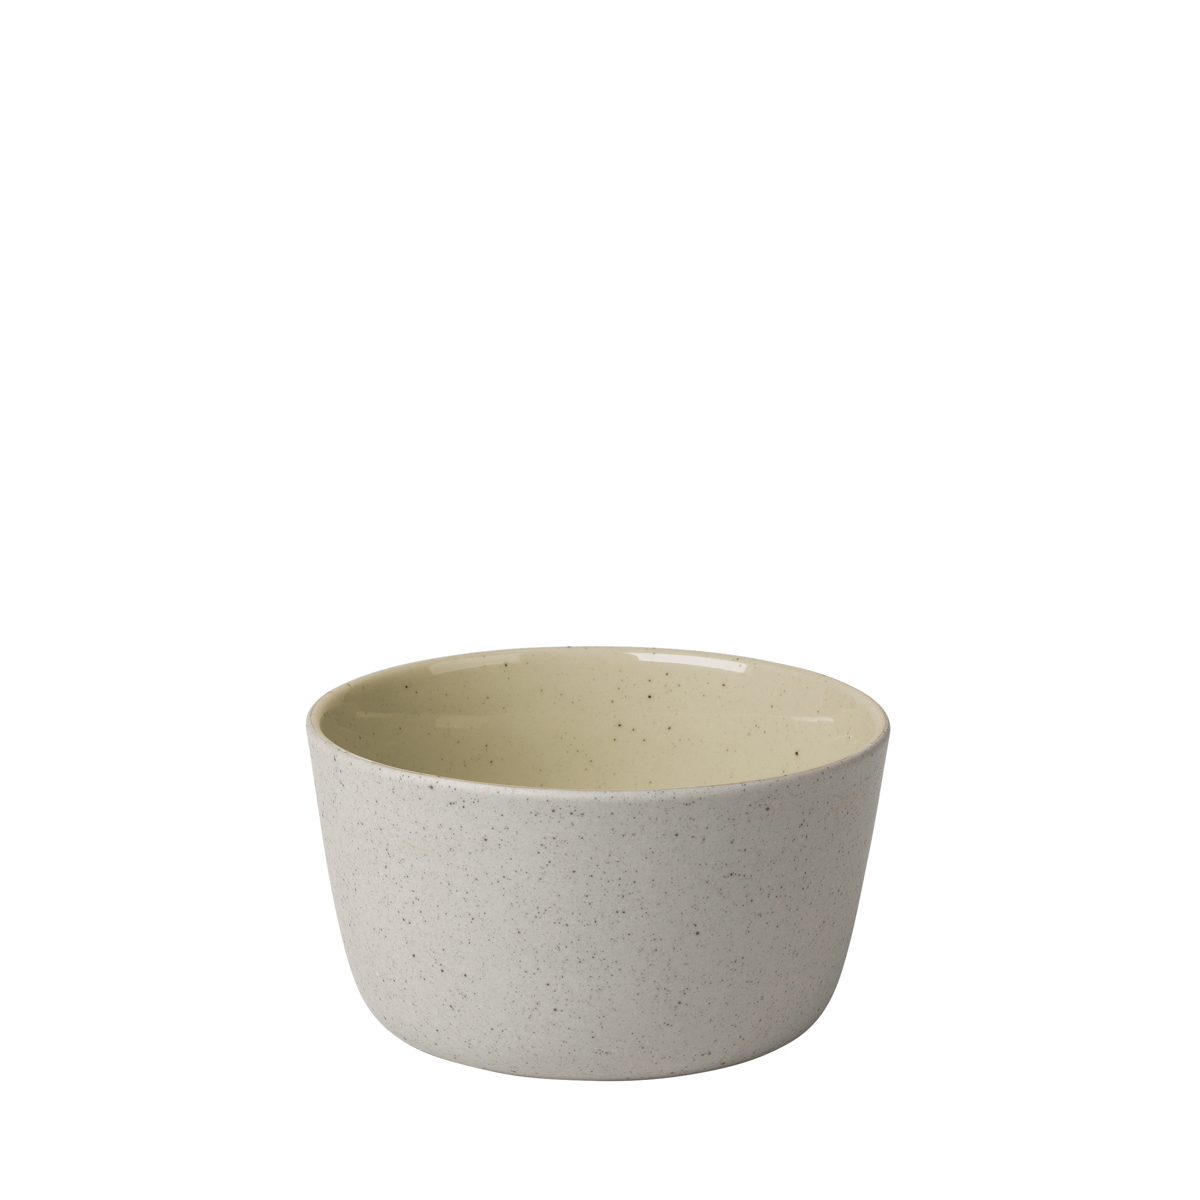 Schale -SABLO- Savannah Size S, Ø 11 cm. Material: Keramik. Von Blomus.